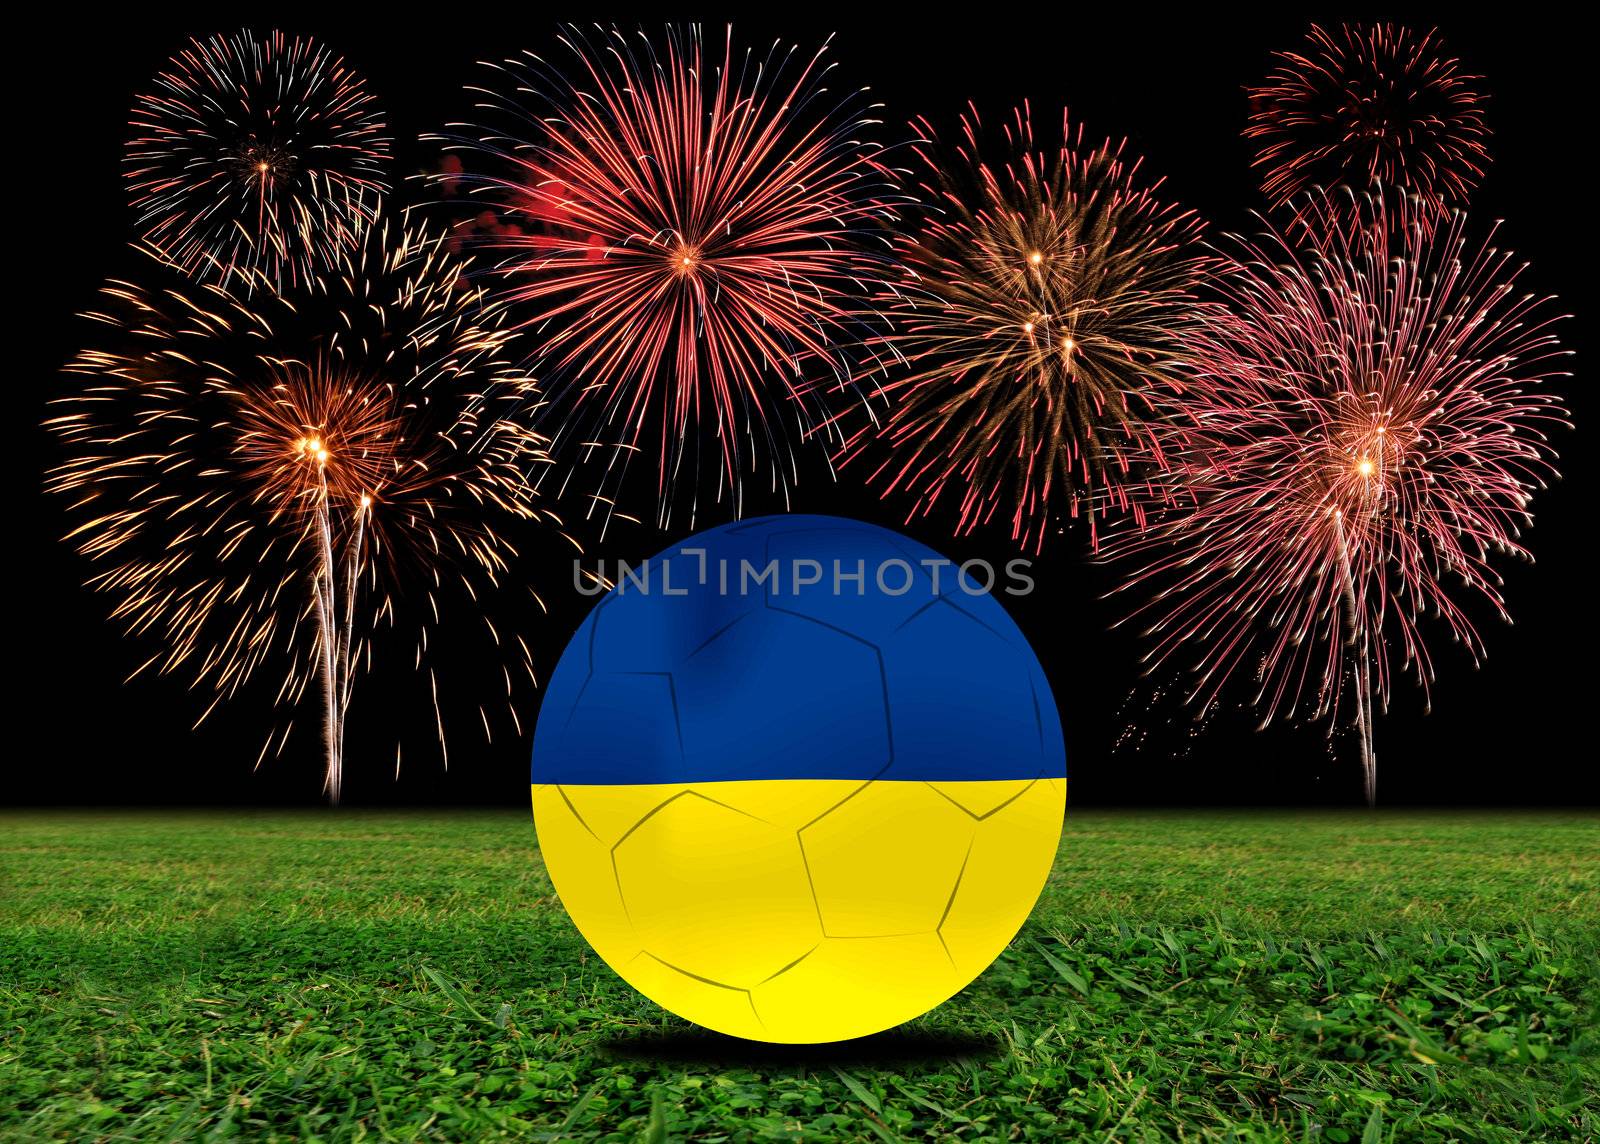 Ukrain  soccer  ball in european